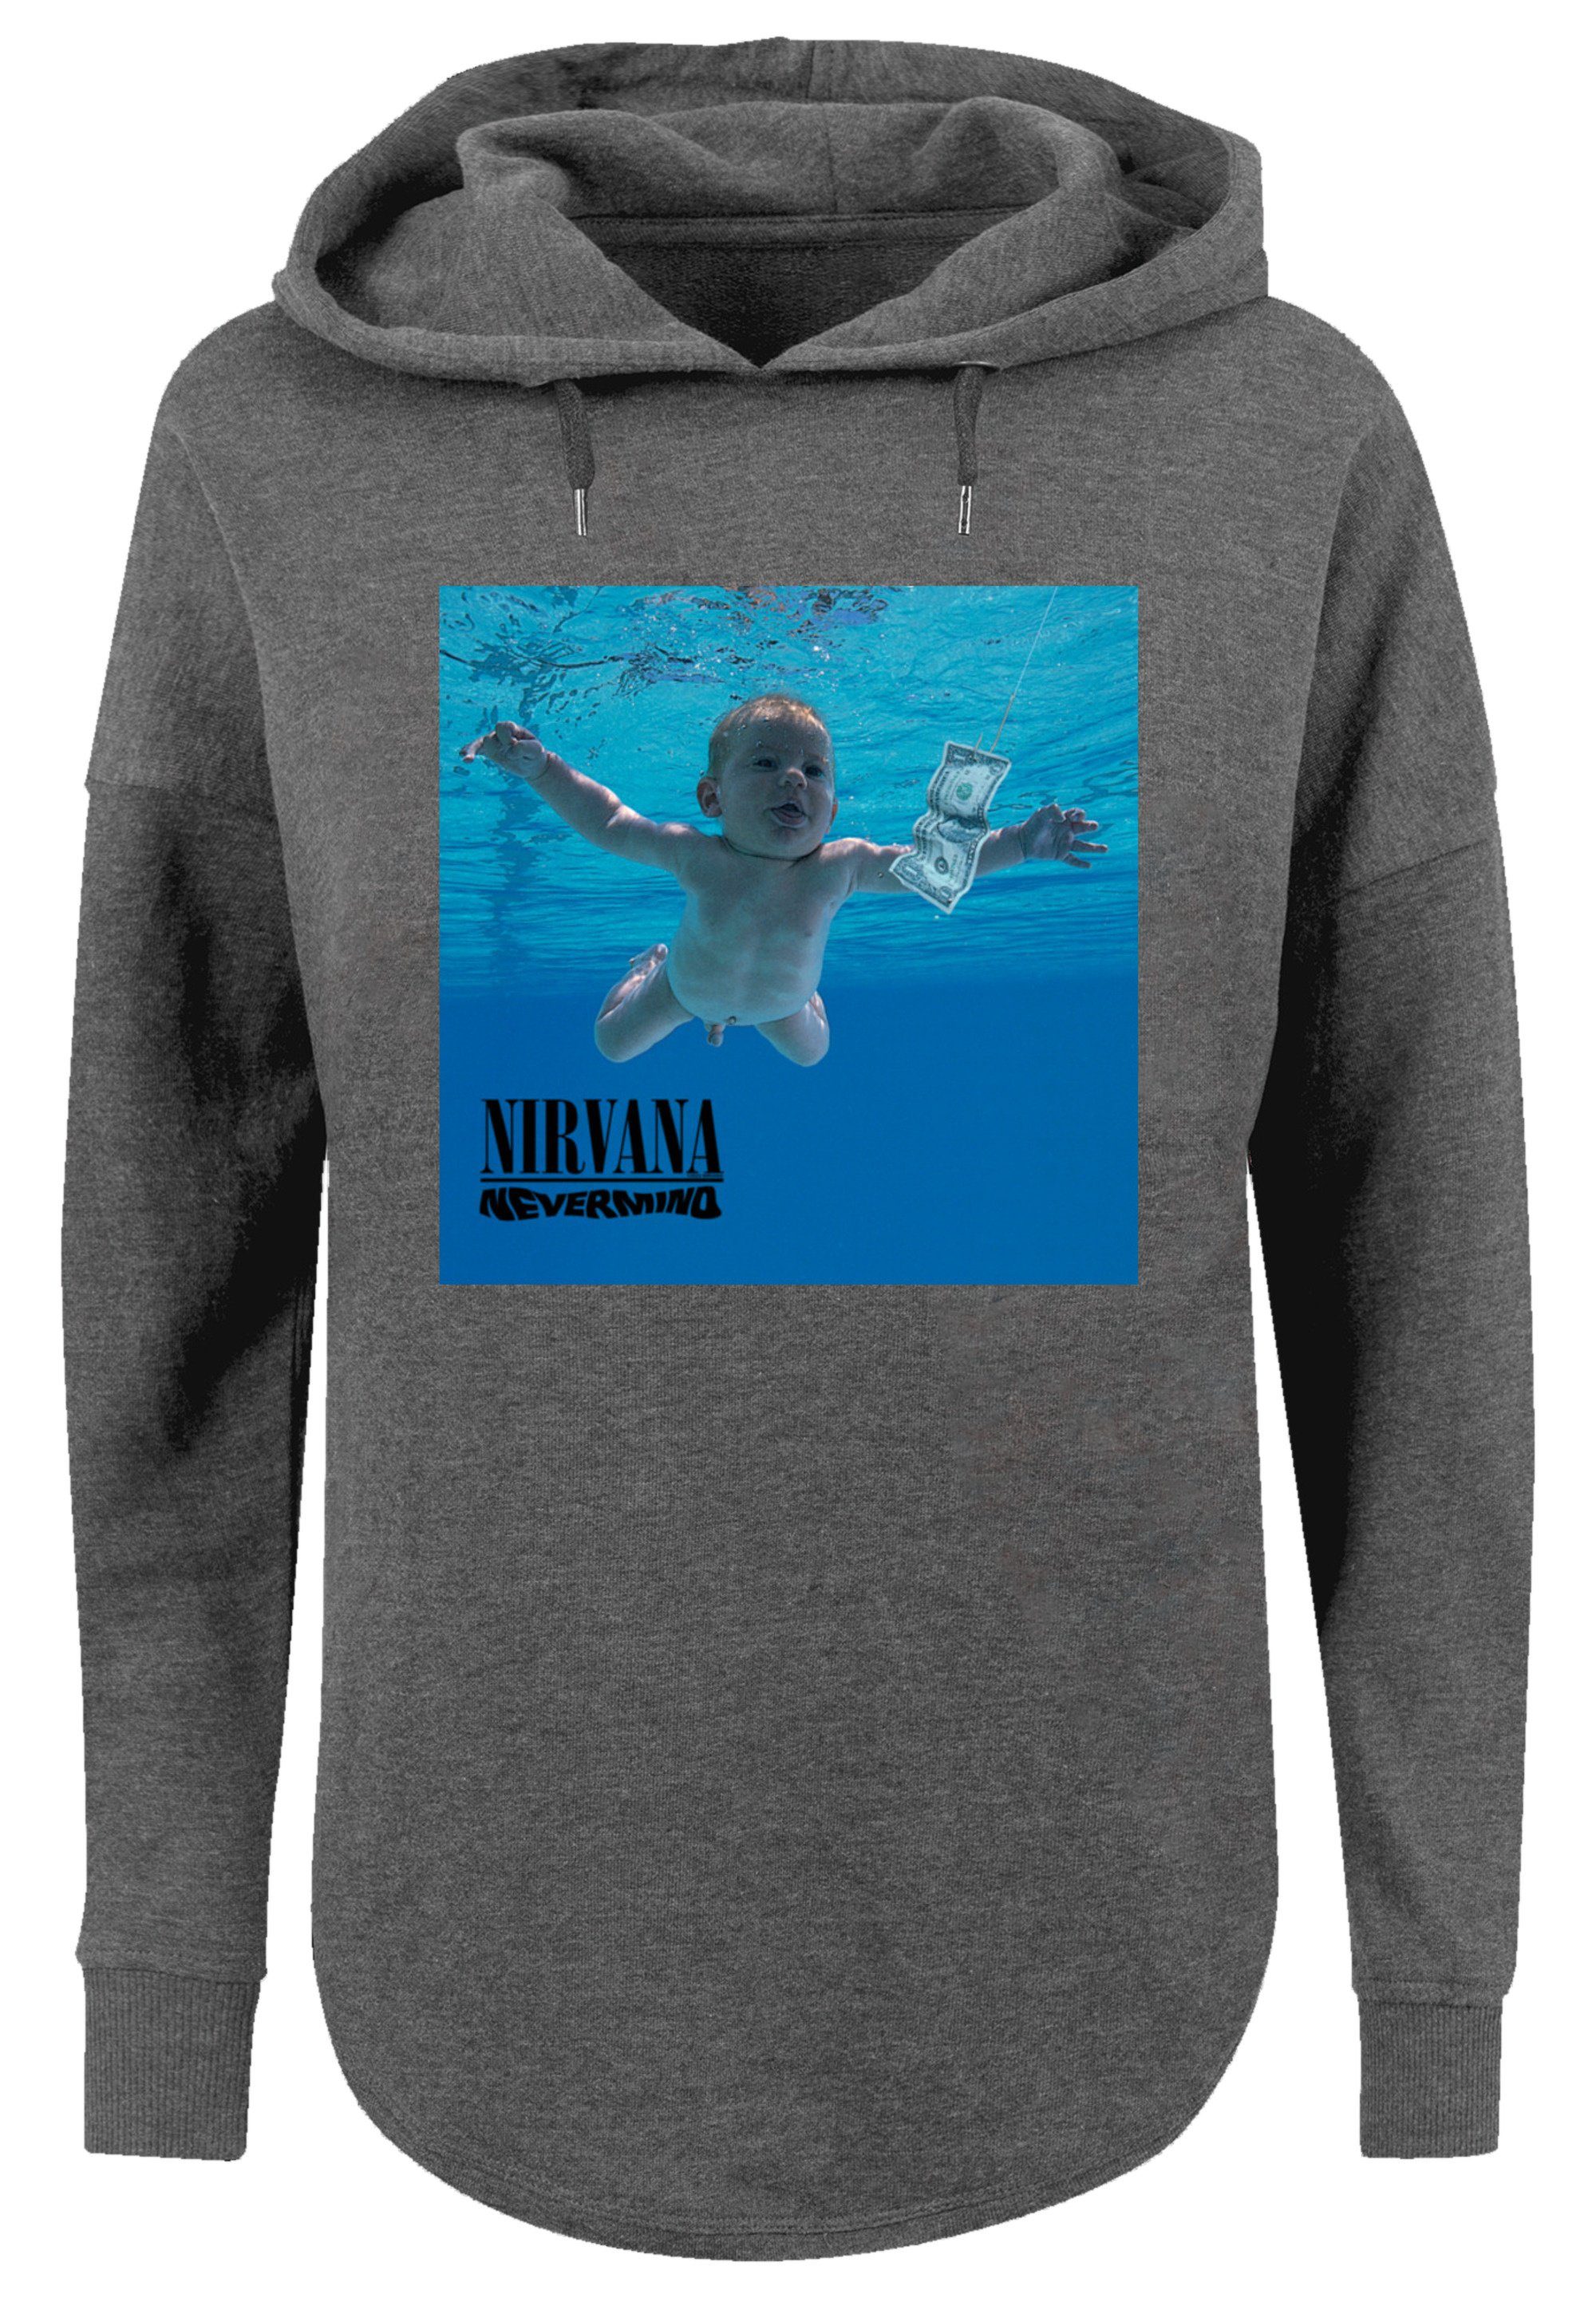 F4NT4STIC Sweatshirt Nirvana Rock Band Nevermind Album Premium Qualität,  Gemütlicher Dammen Hoody mit sportlichem Look